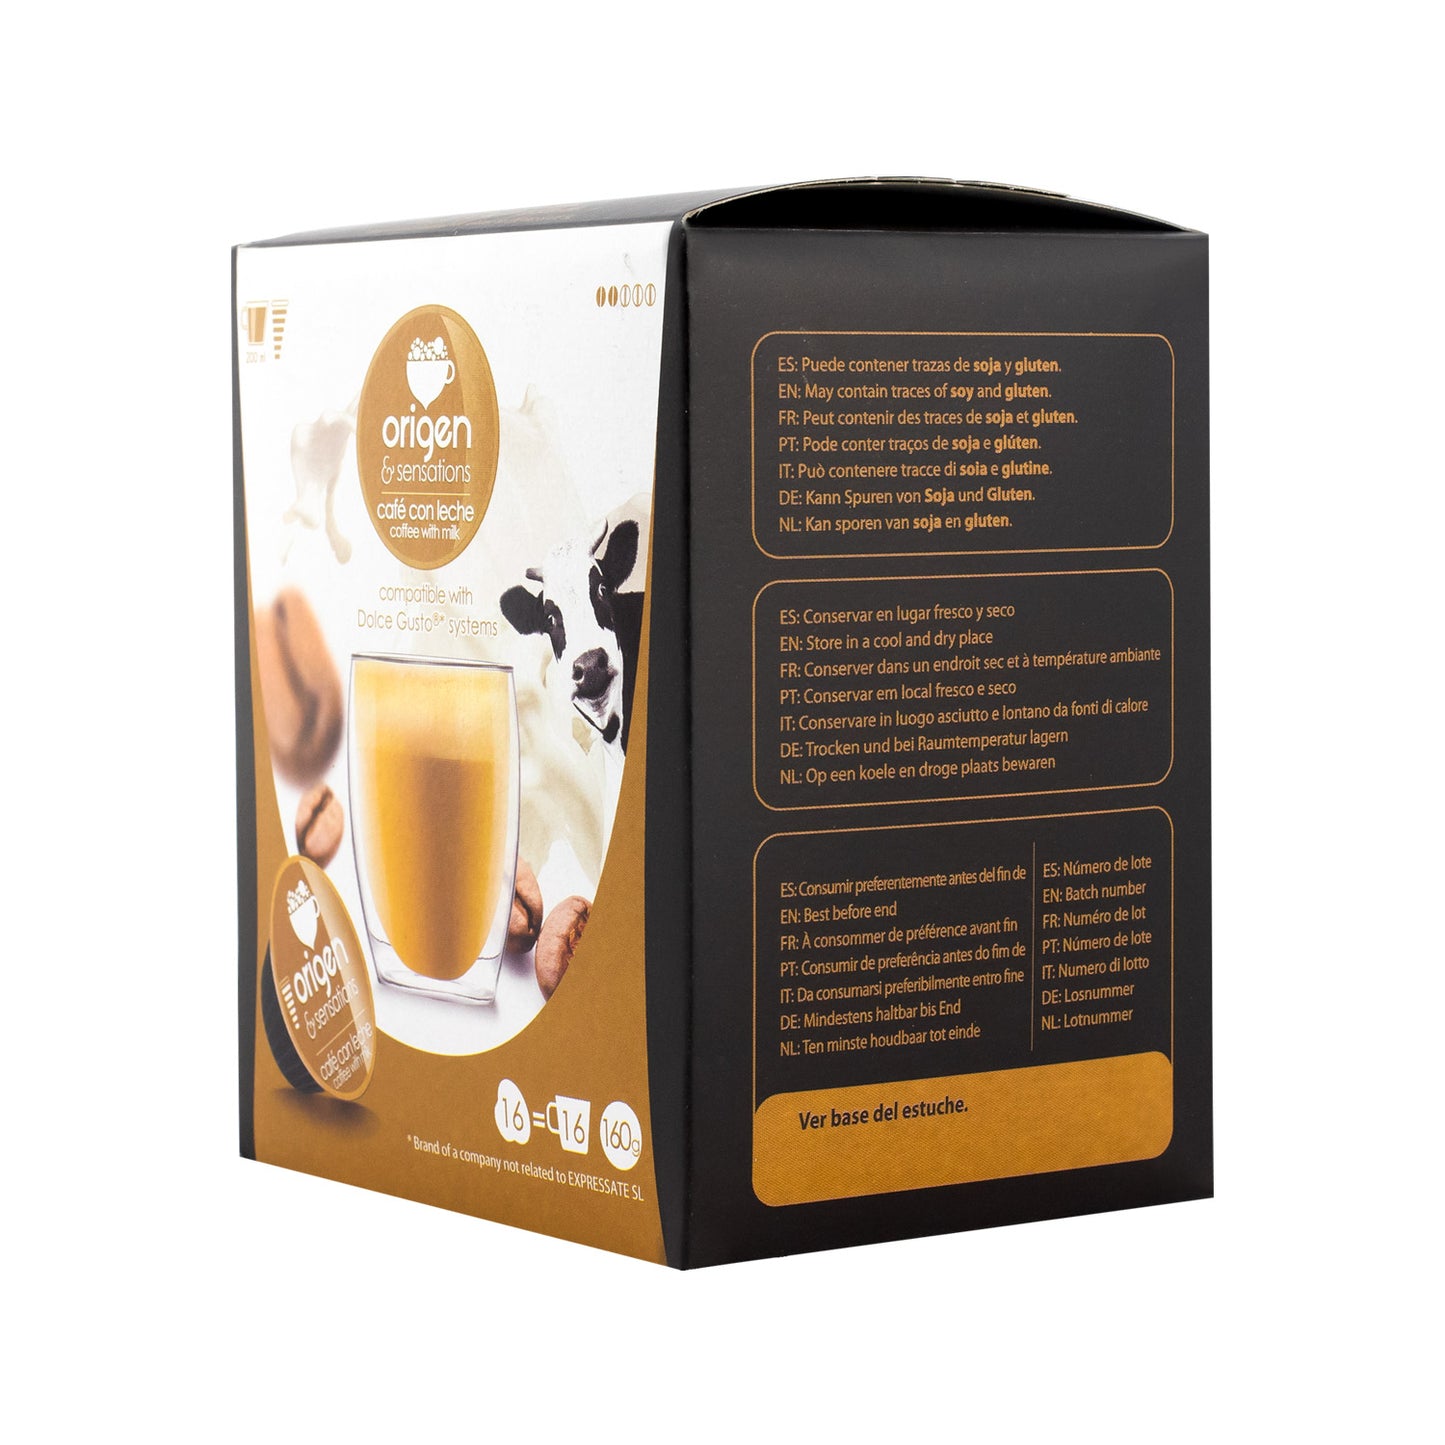 Cacaolat · Cápsulas Compatibles Dolce Gusto – Origen & Sensations - Tienda  online de cápsulas de café